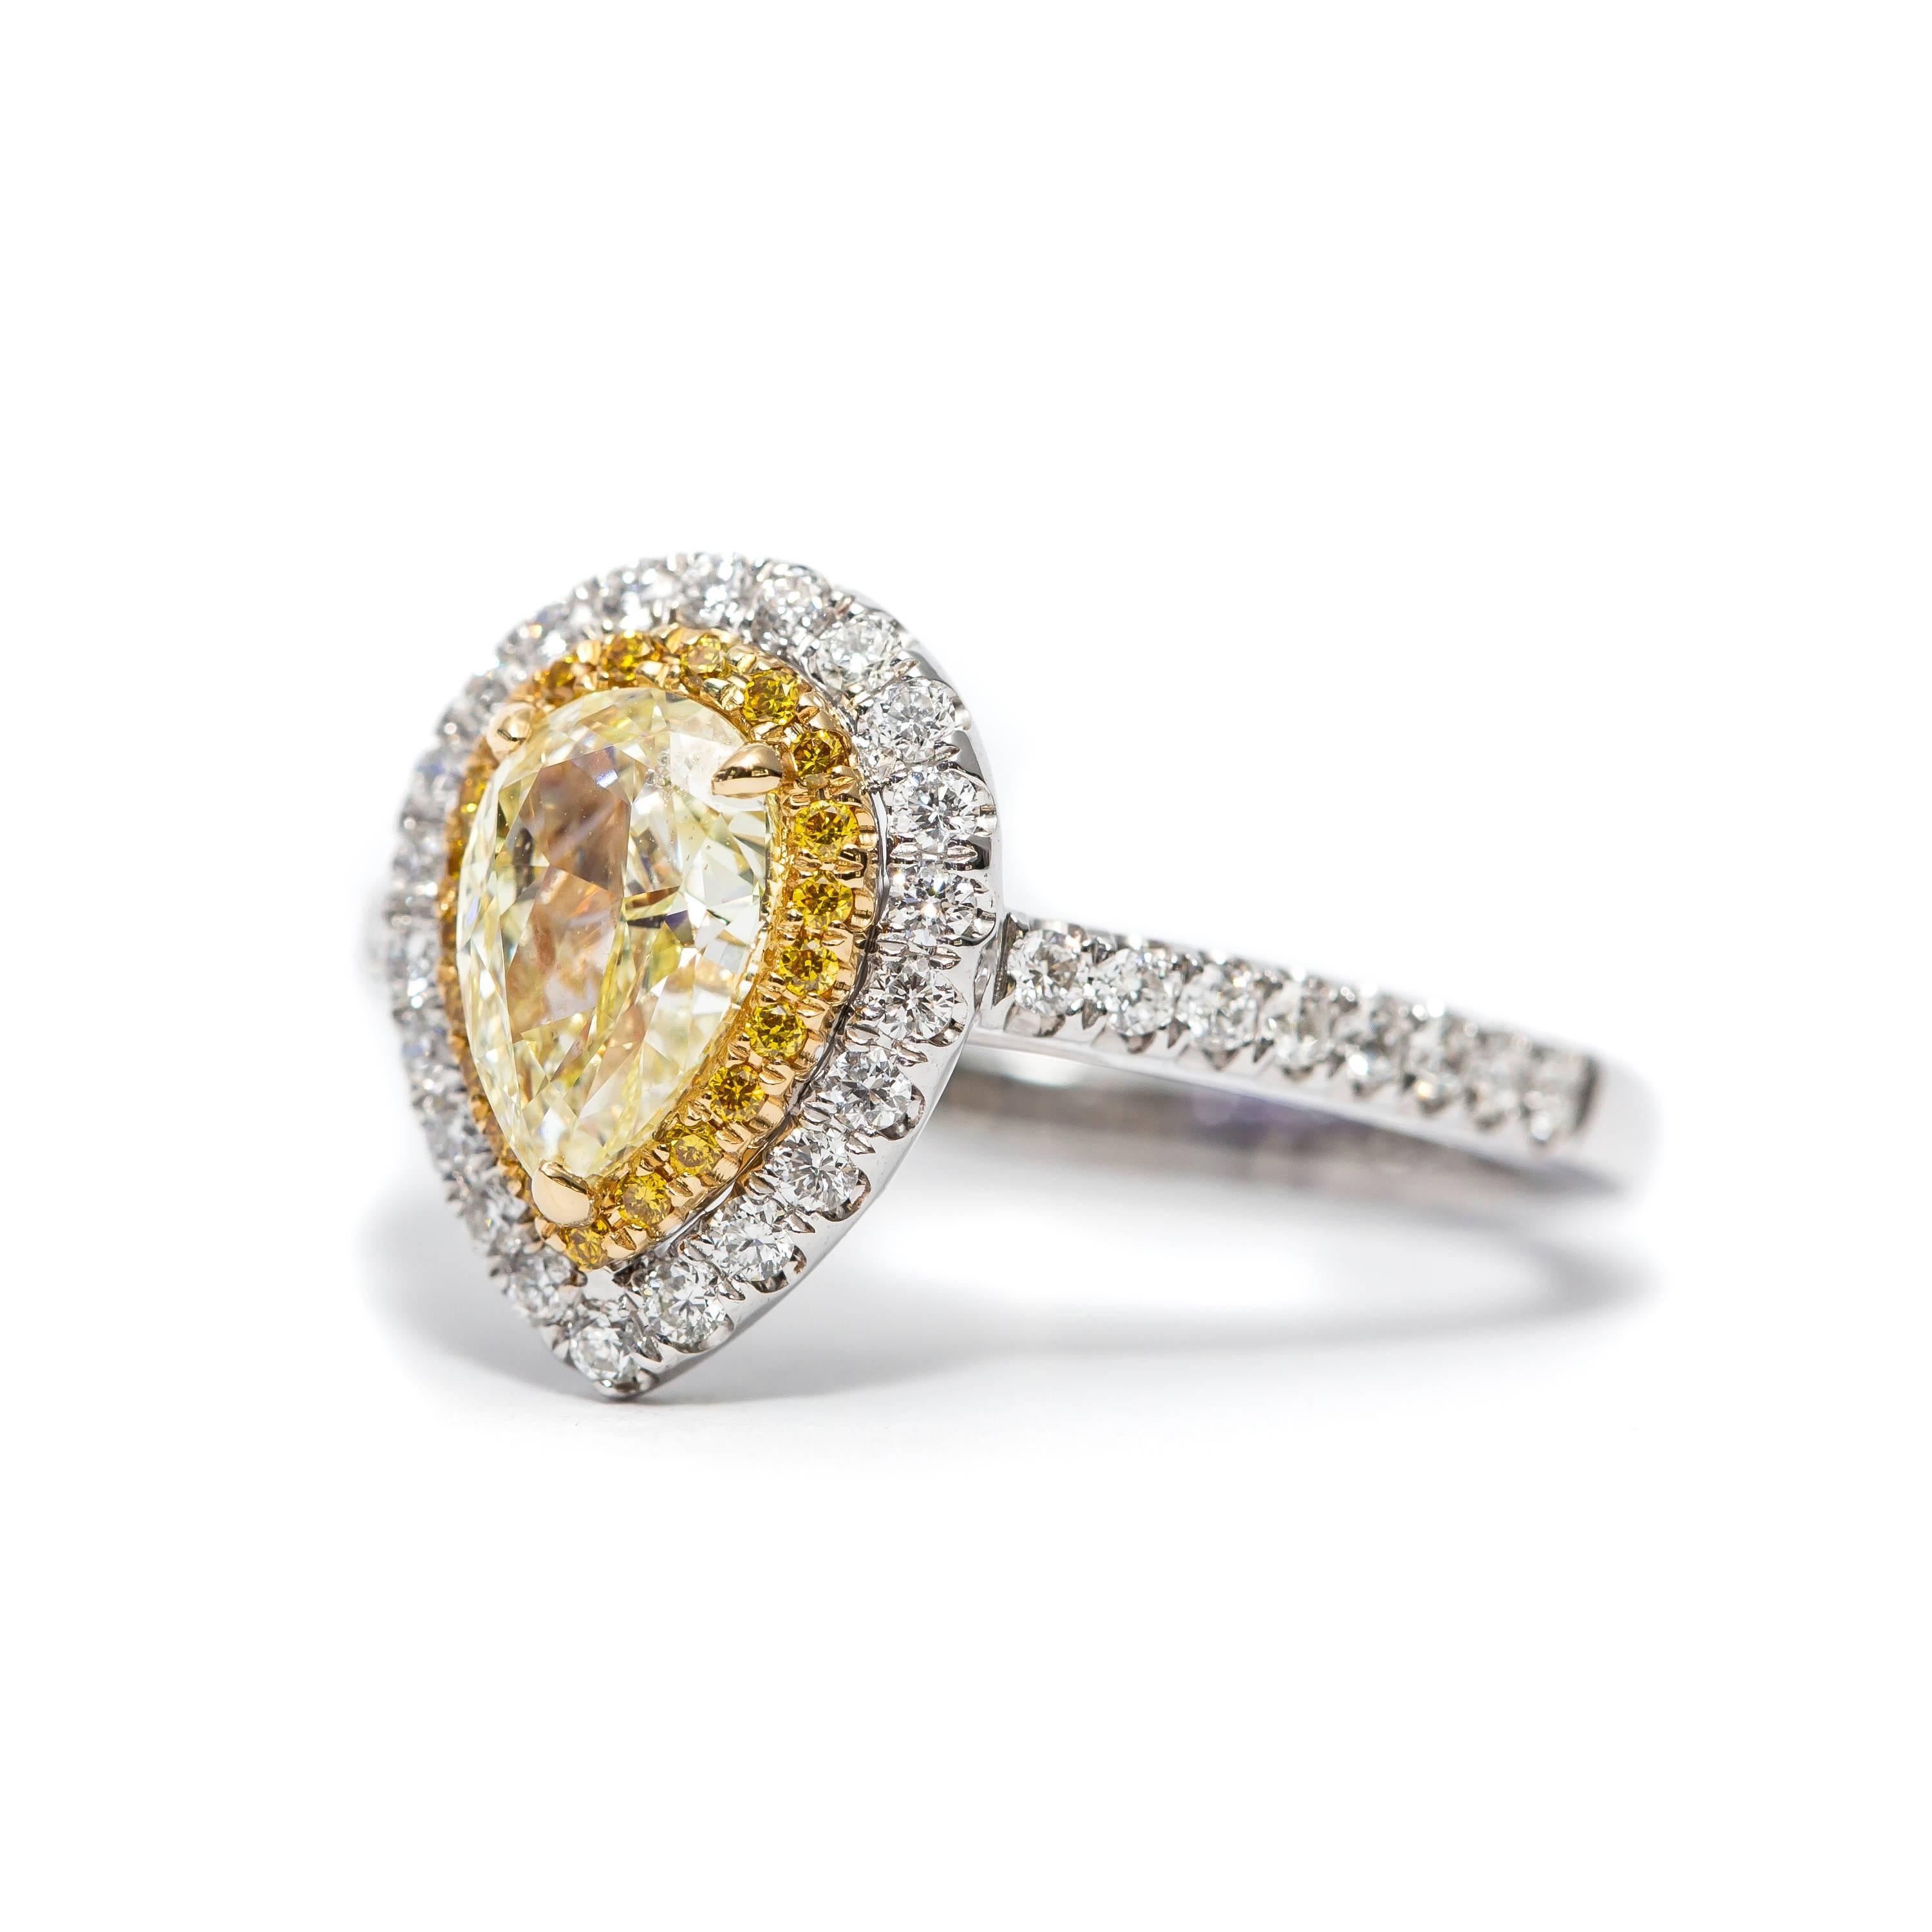 Ce magnifique diamant poire certifié GIA de 0,87 carat de couleur naturelle jaune clair est serti au centre de la bague avec un double halo. Le halo intérieur contient 0,08 carat de diamants ronds de couleur jaune clair et 0,38 carat de diamants